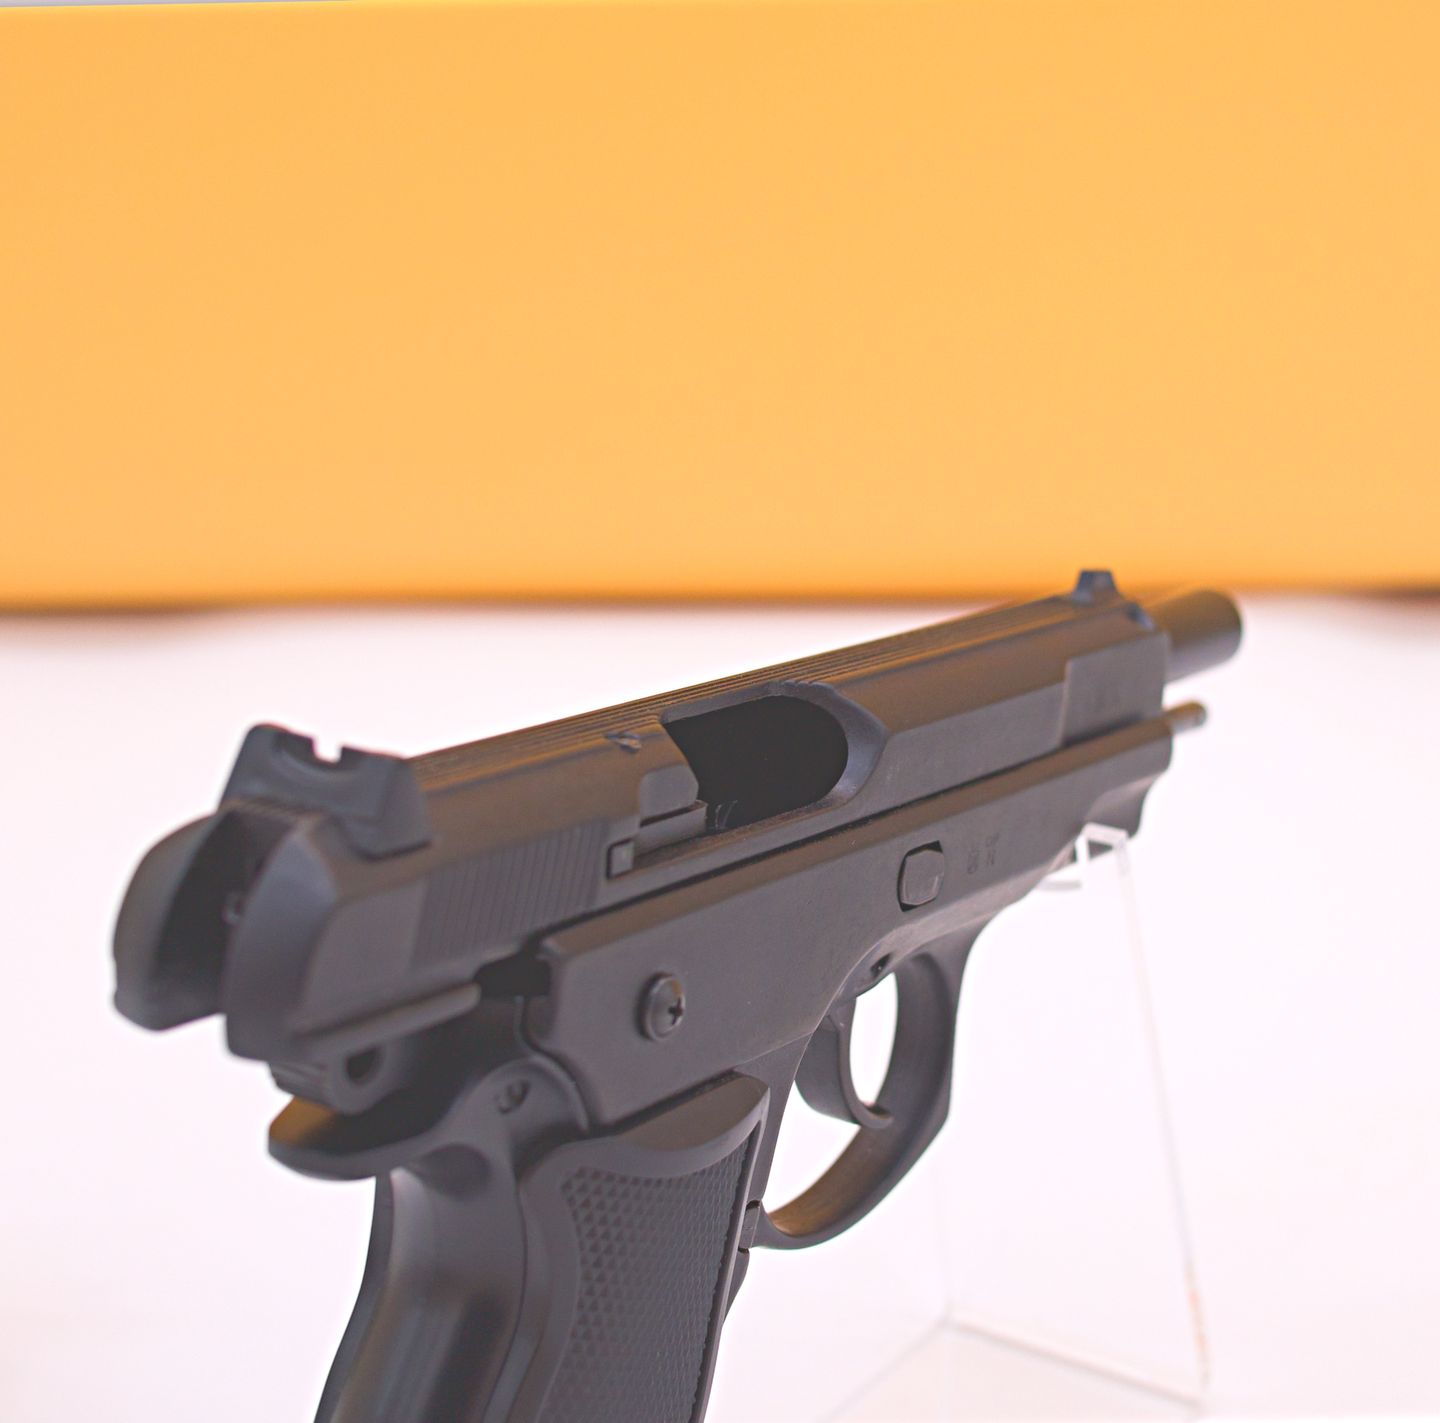 Pistola de alarma y defensa - Pistola de alarma y defensa Kimar 75 9mm PAK – estilo CZ 75